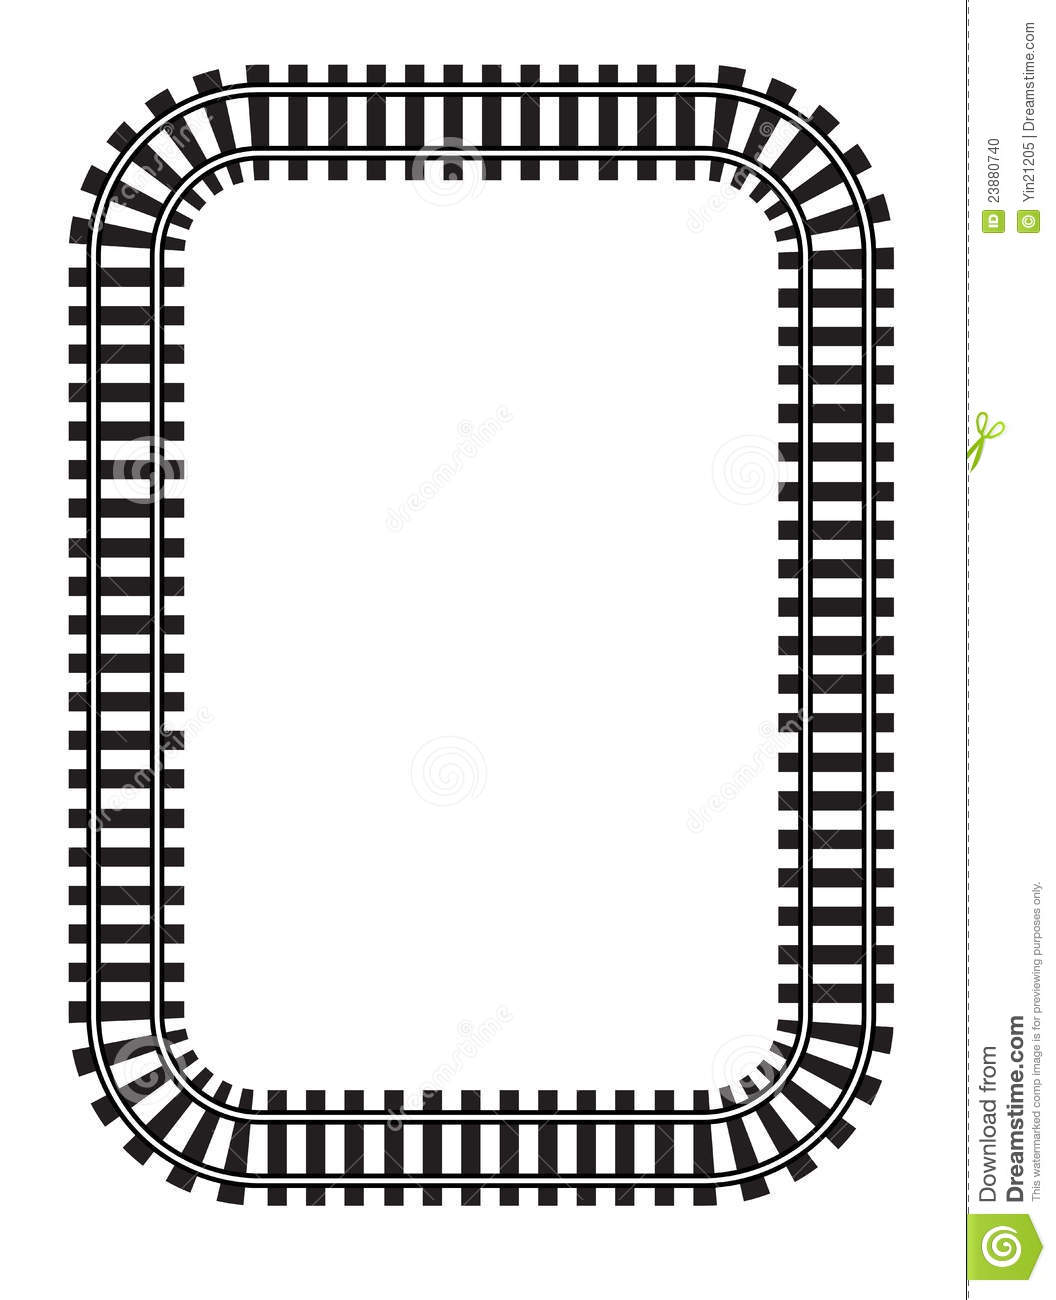 train track clipart - Train Track Clipart